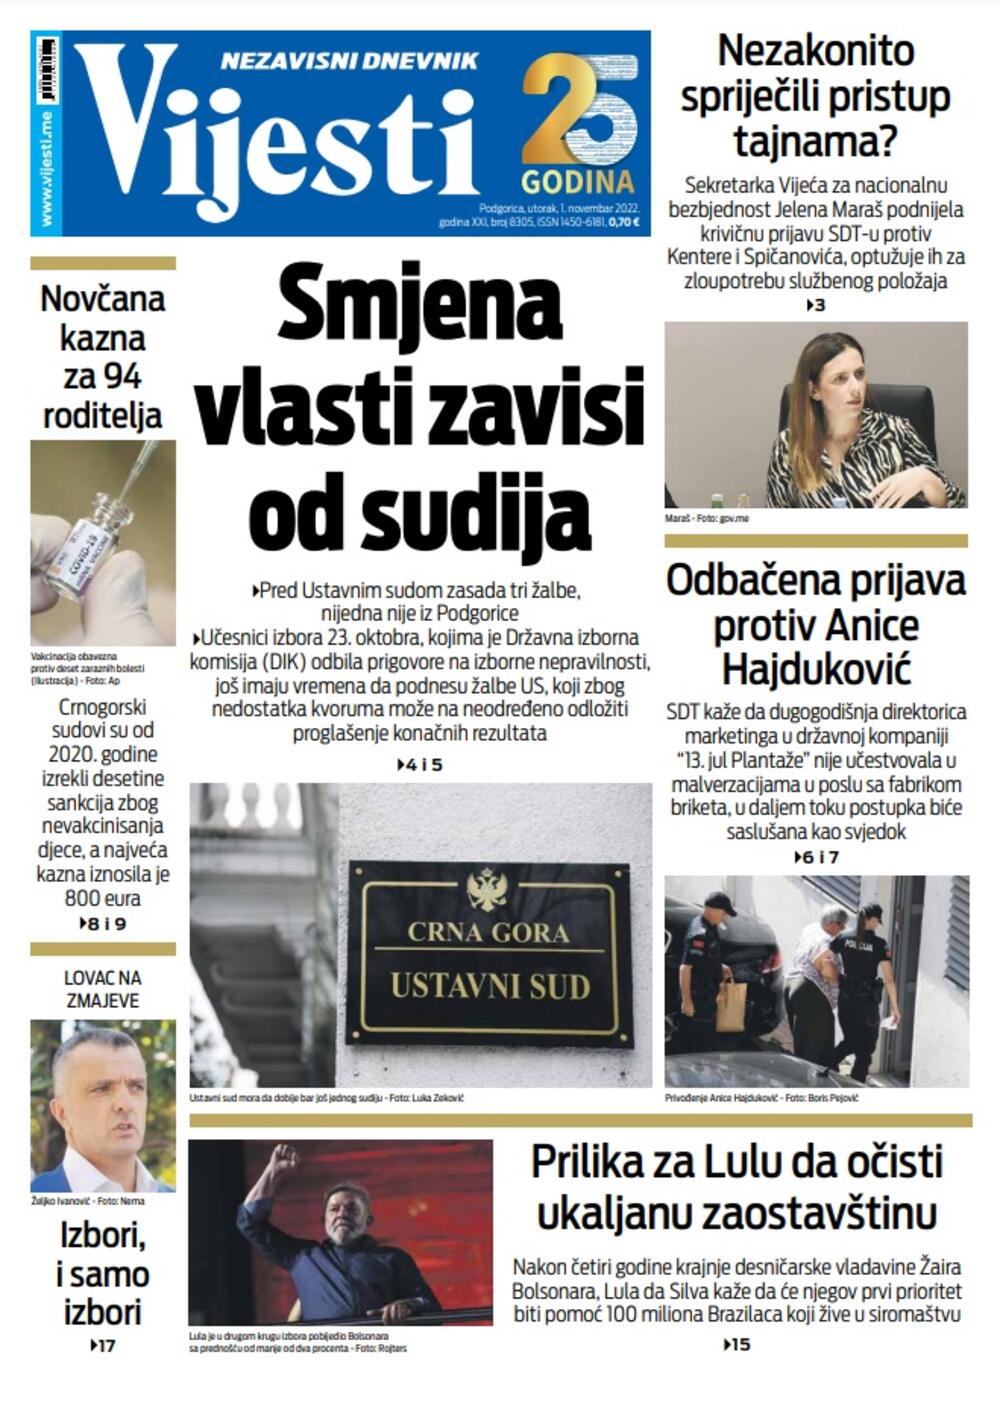 Naslovna strana "Vijesti" za 1. novembar 2022., Foto: Vijesti